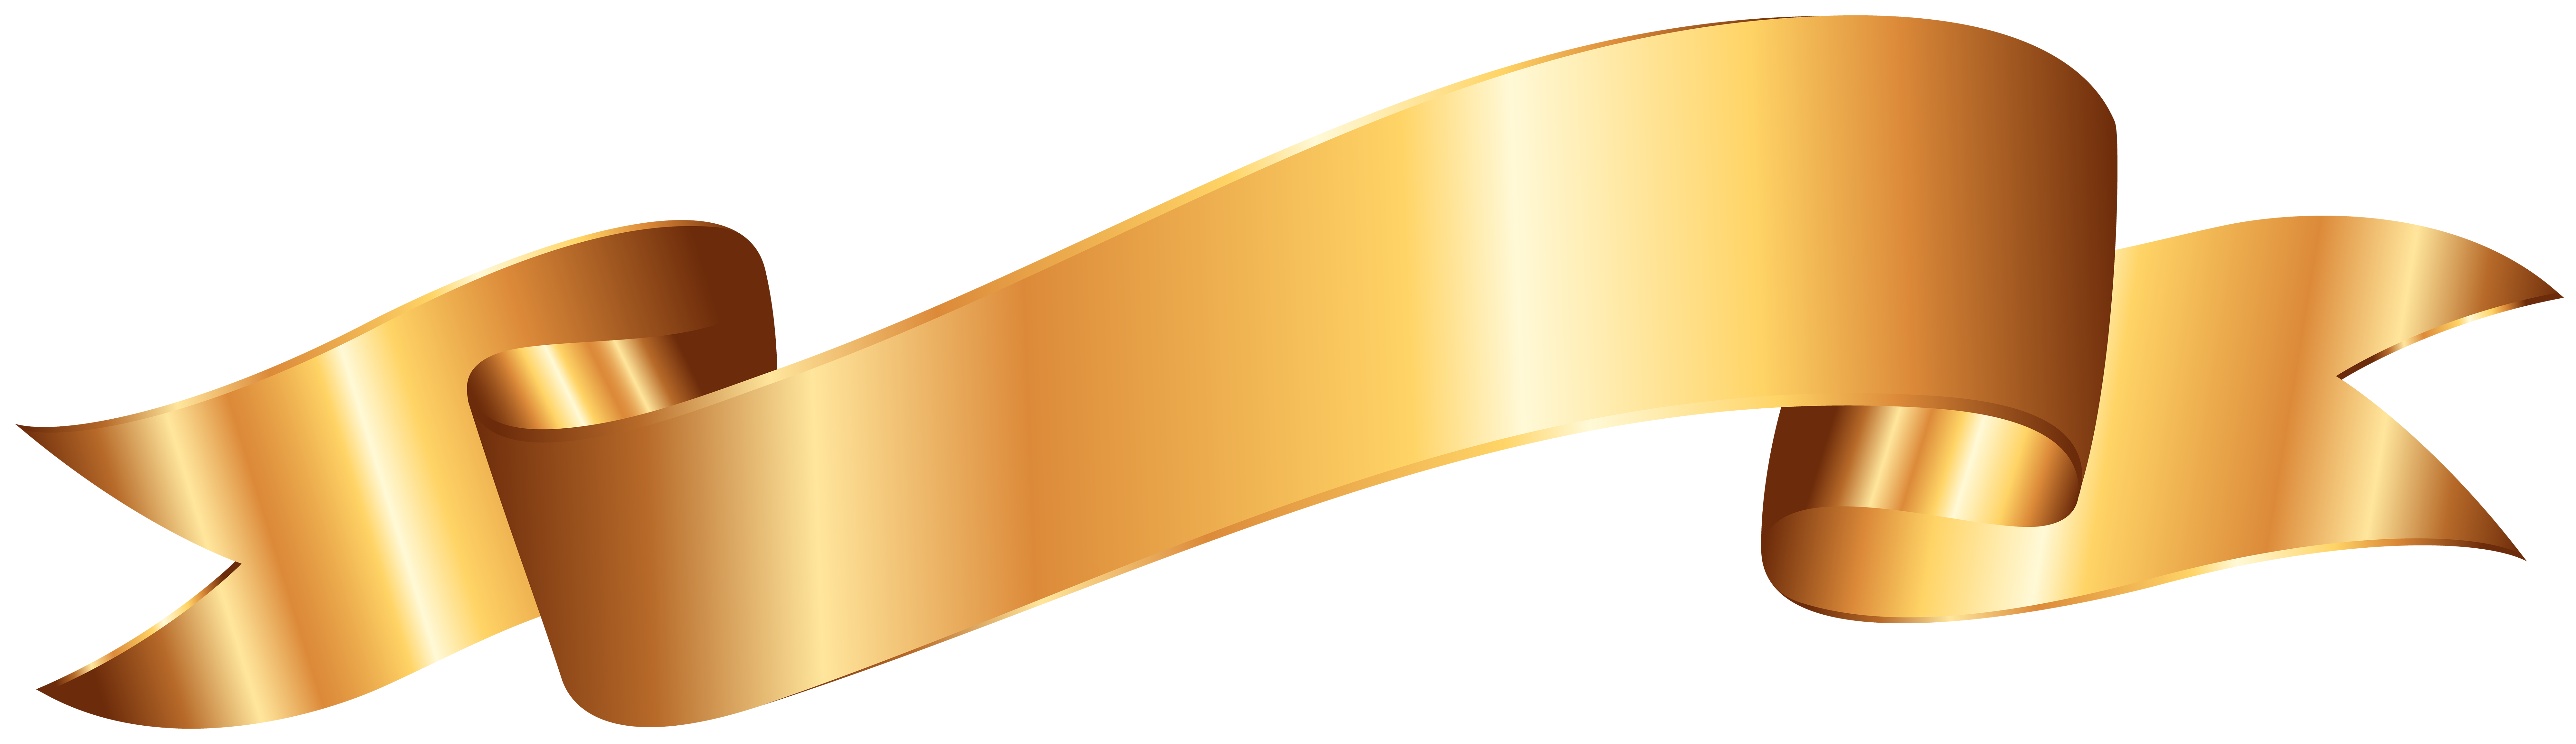 Gold Banner PNG Clip Art Image.